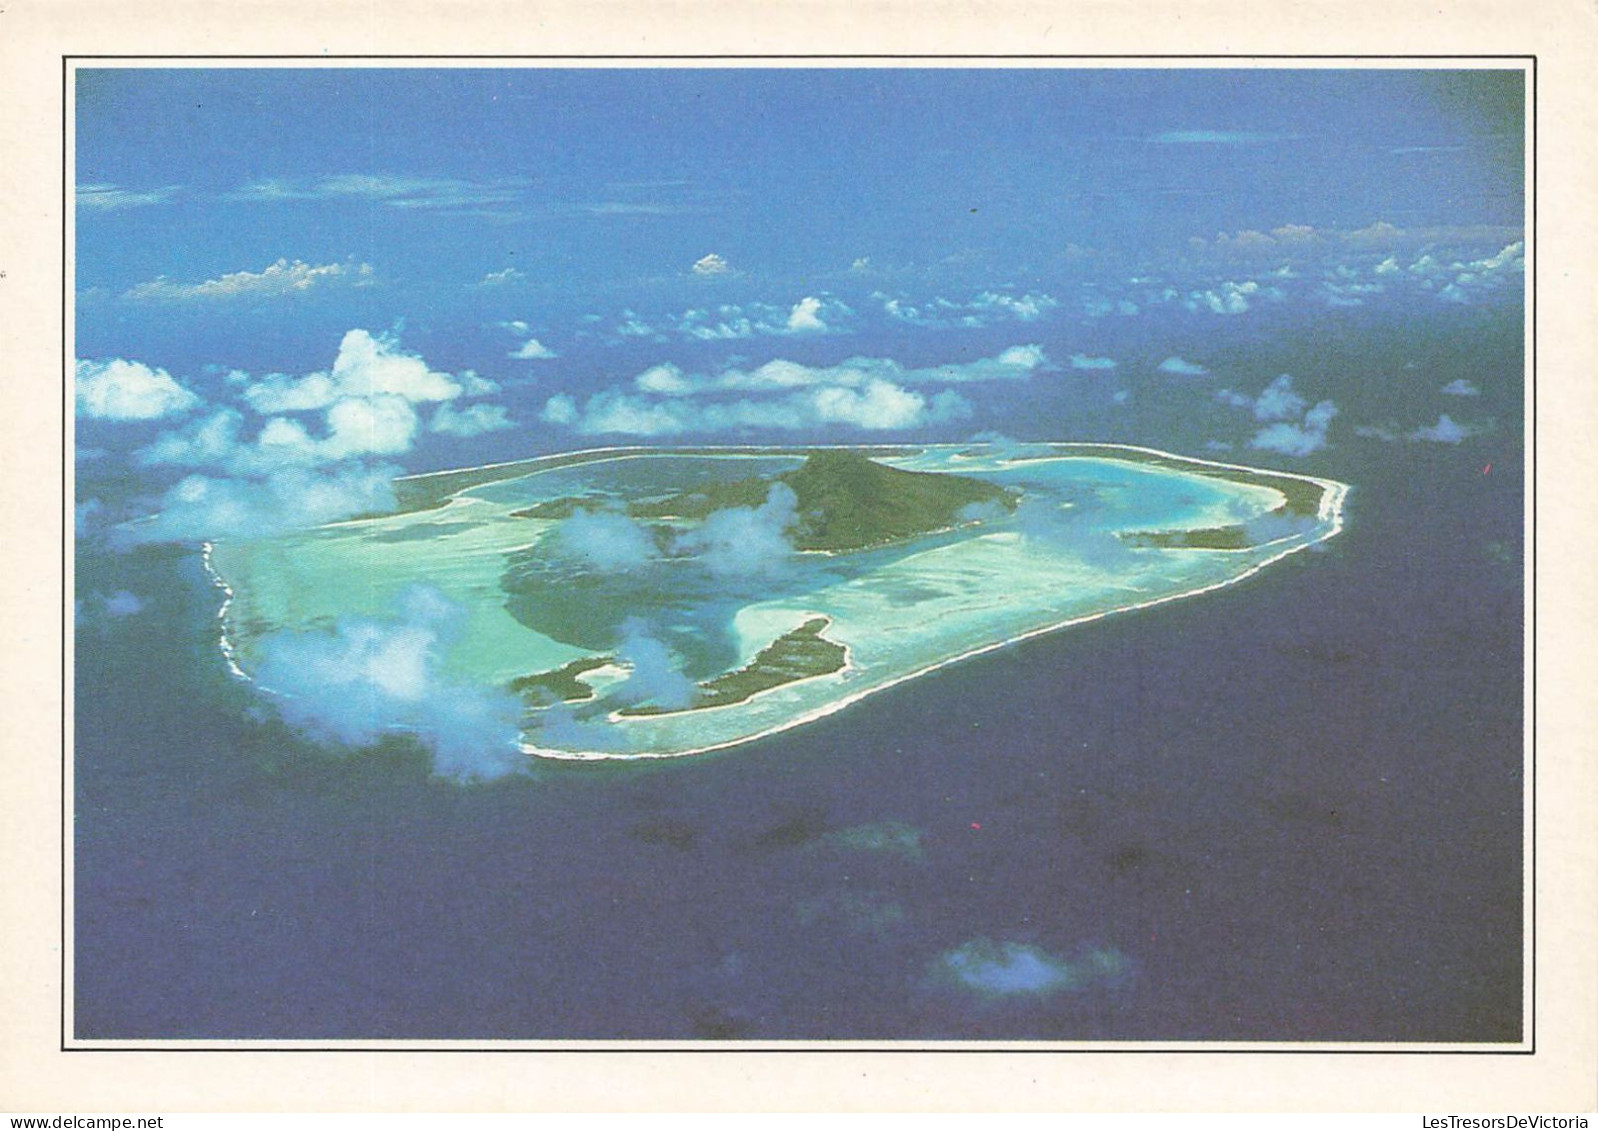 POLYNESIE FRANCAISE - Maupiti - L'île Vue Du Ciel - Colorisé - Carte Postale - French Polynesia